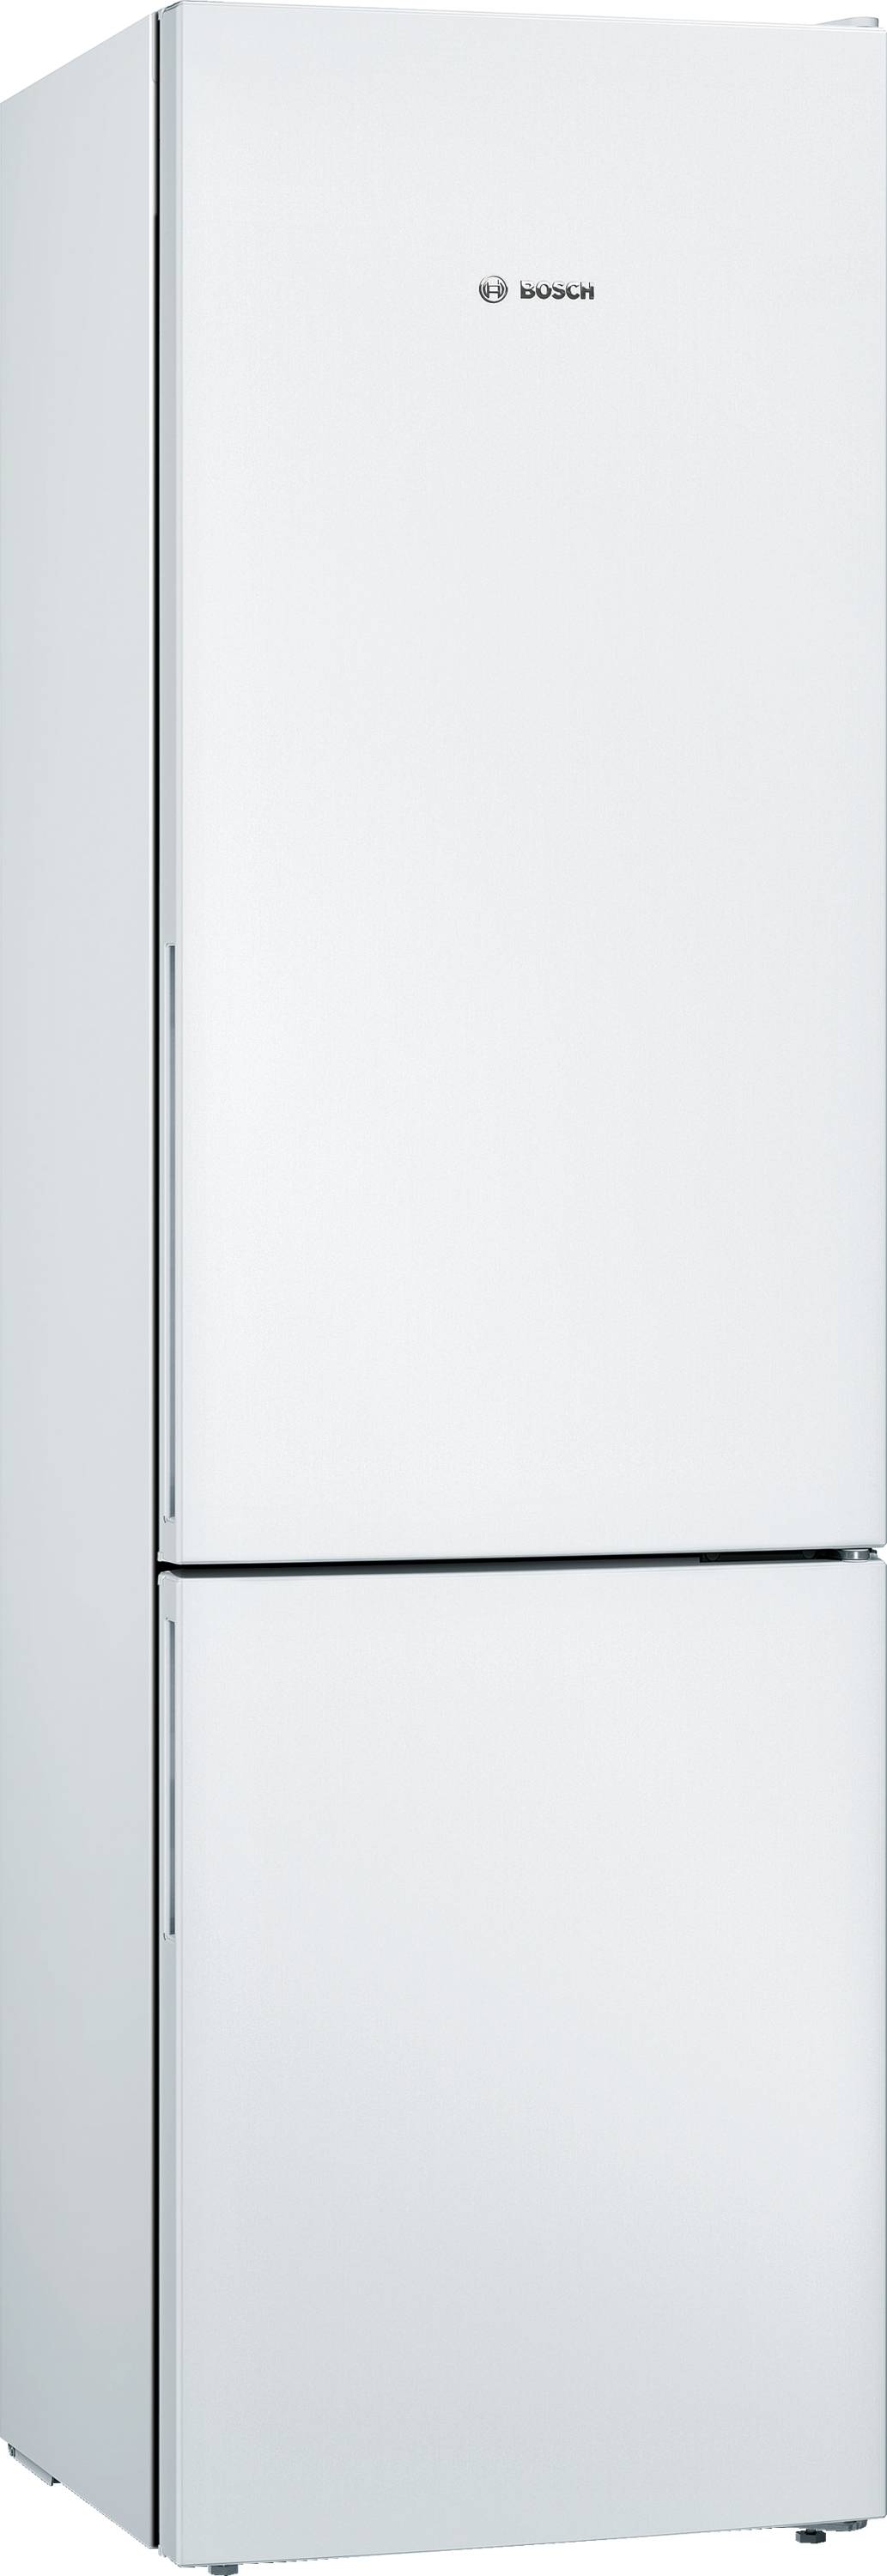 KGV39VWEA Combină frigorifică independentă 5 ANI GARANTIE Bosch, 342l, 201cm X 60cm, E, Alb